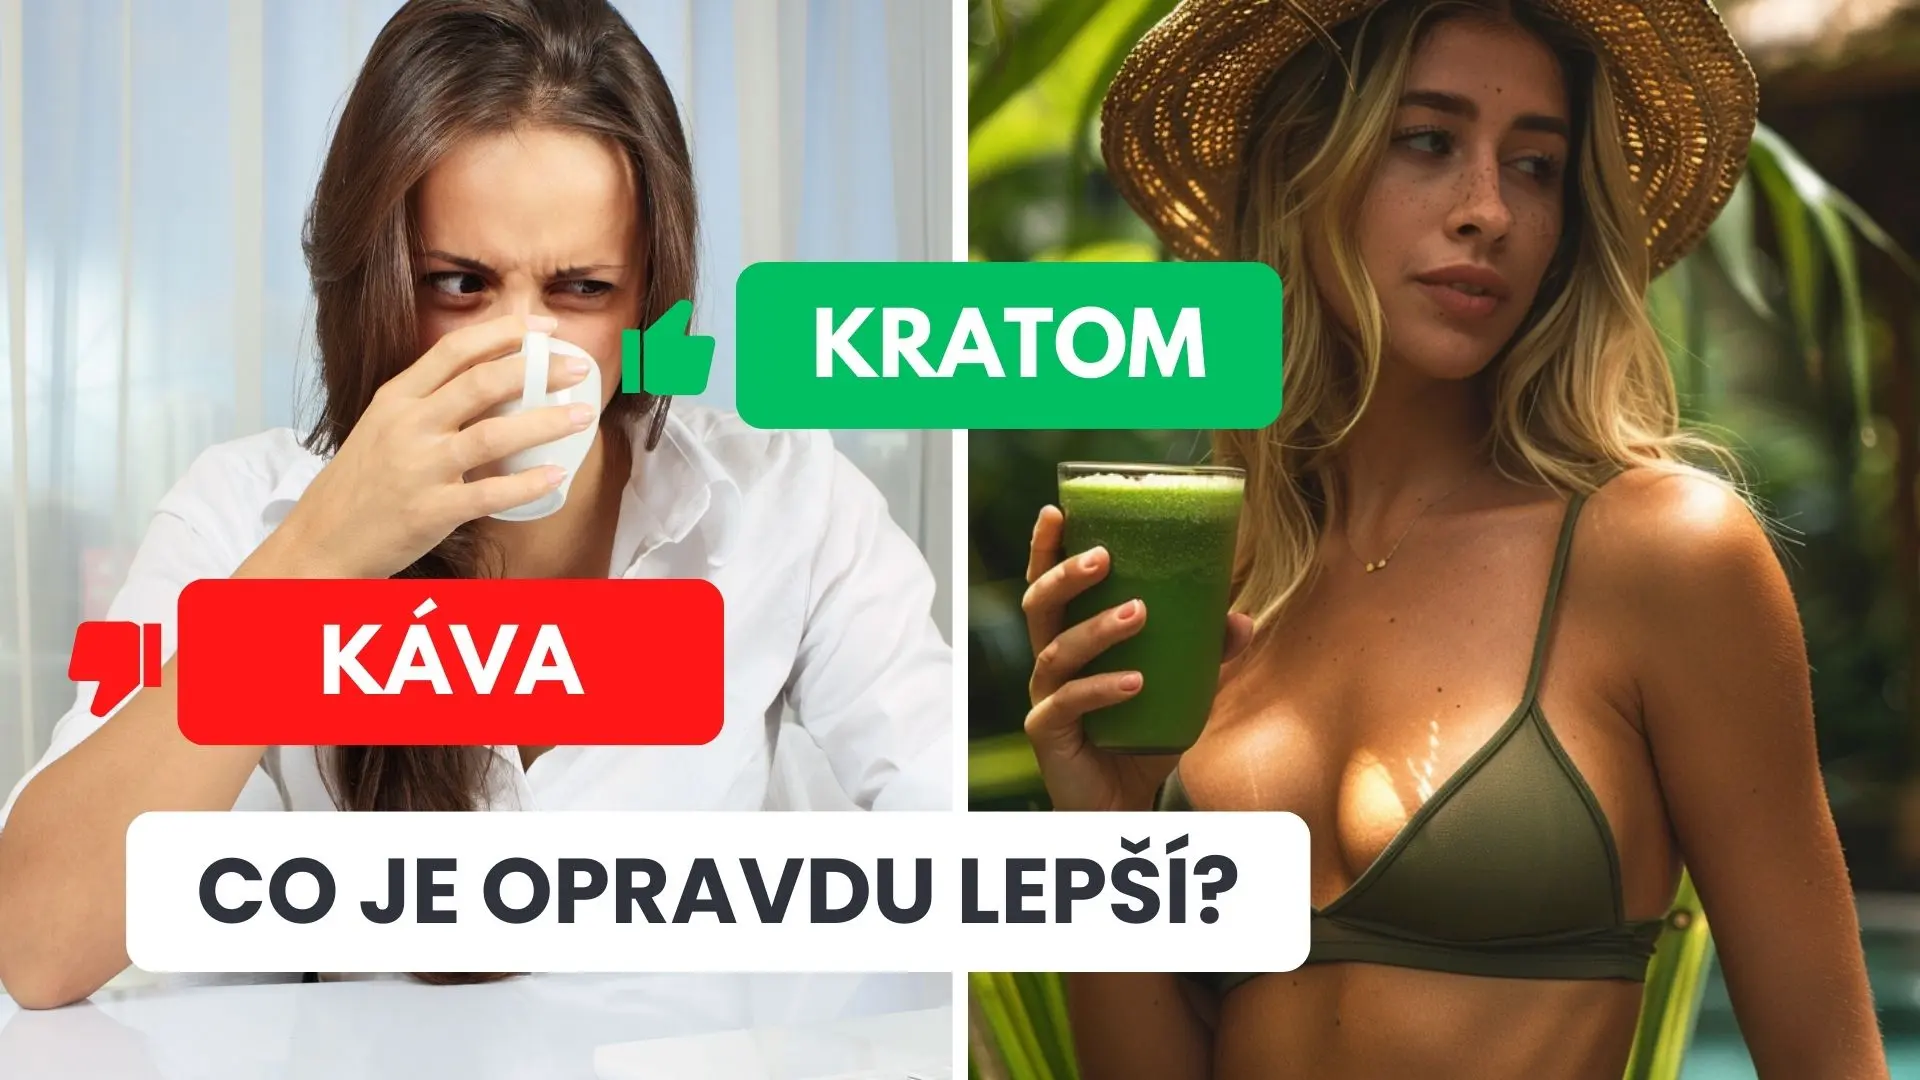 greenly cz - greenly cz clanek miniatura kratom vs kava Greenly.cz